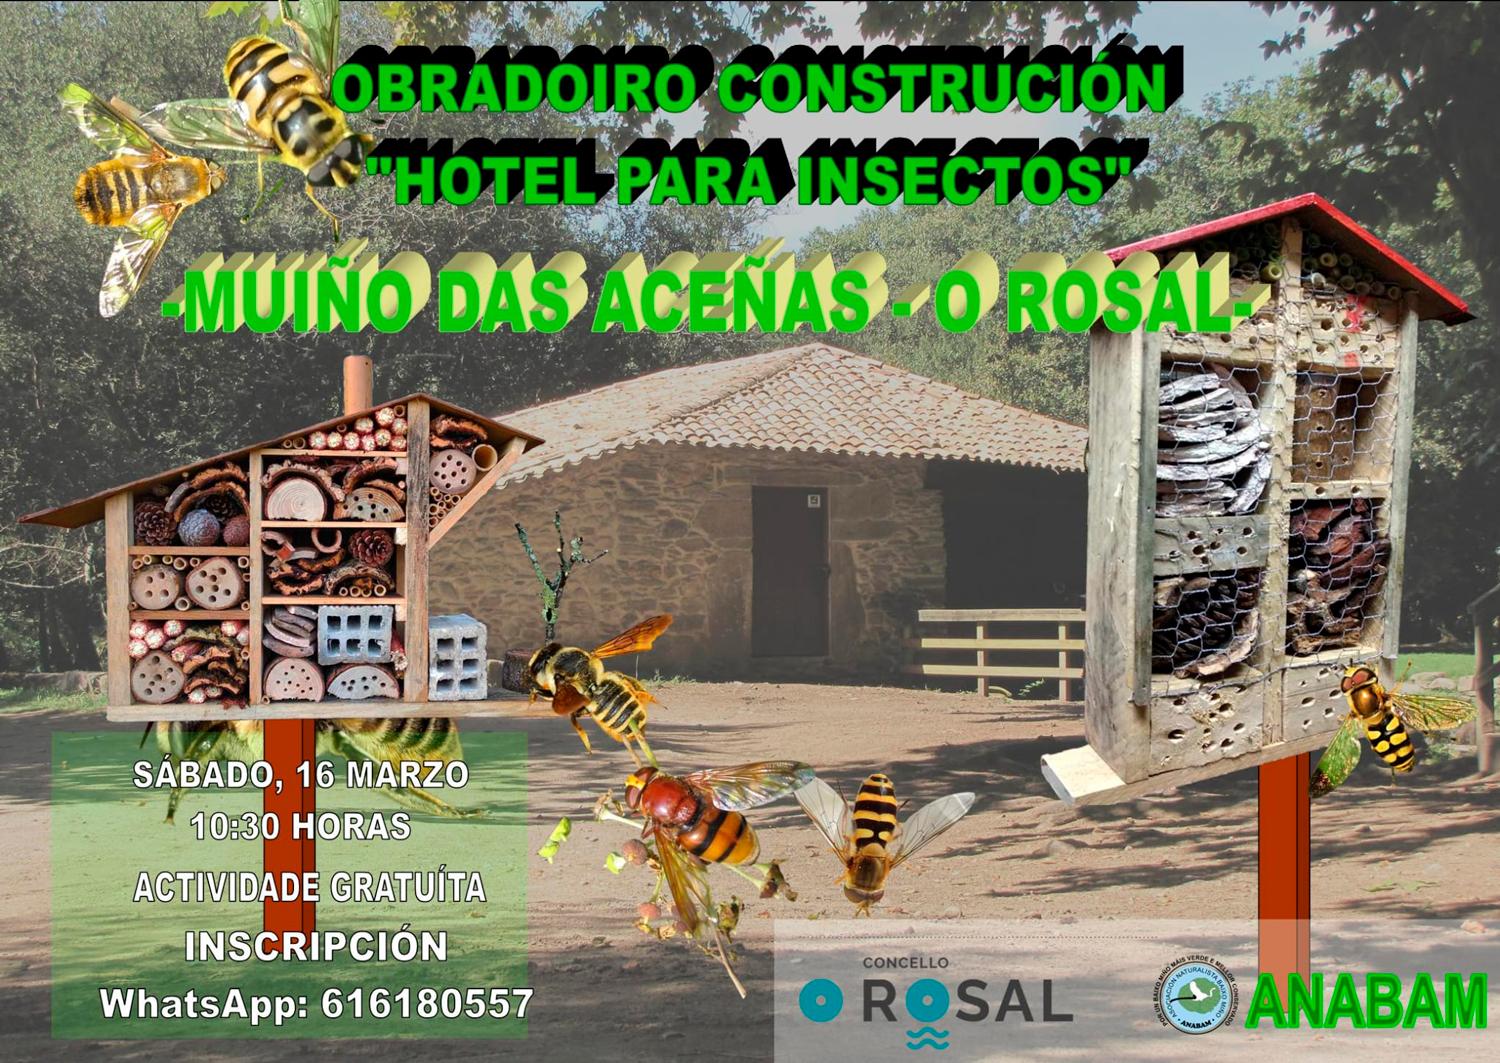 O Rosal súmase ao coidado da natureza cun obradoiro de construción de hoteis para insectos